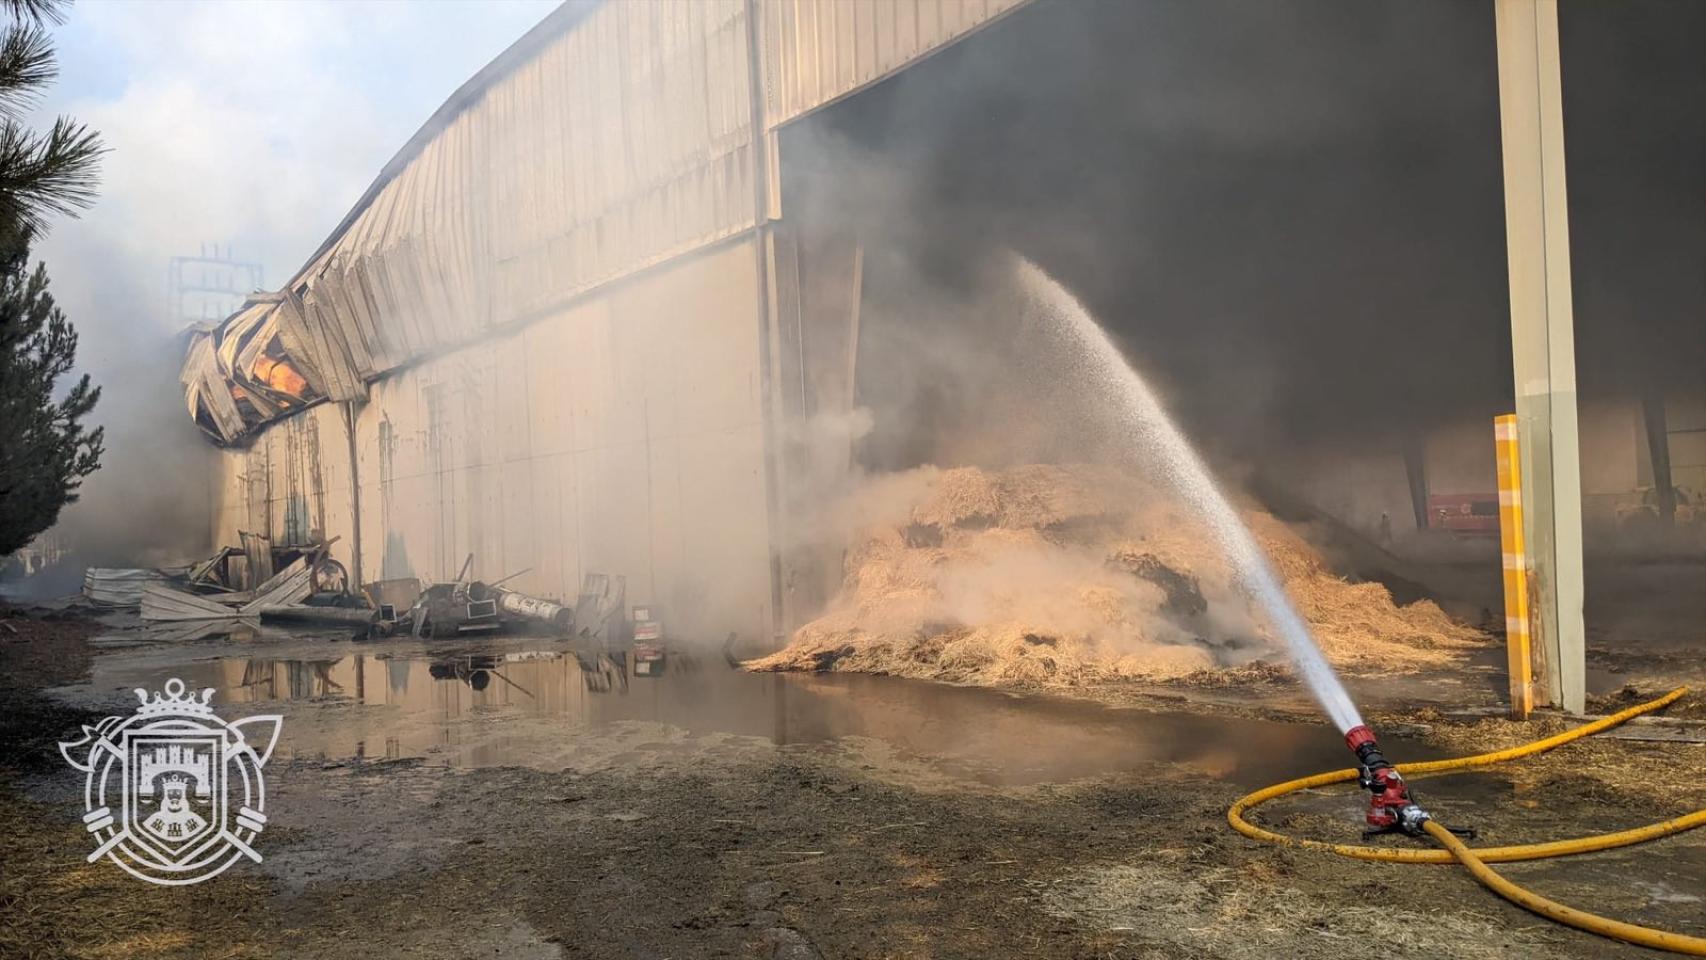 Imagen del incendio de la fábrica en Burgos y los daños visibles en la estructura desde el exterior.